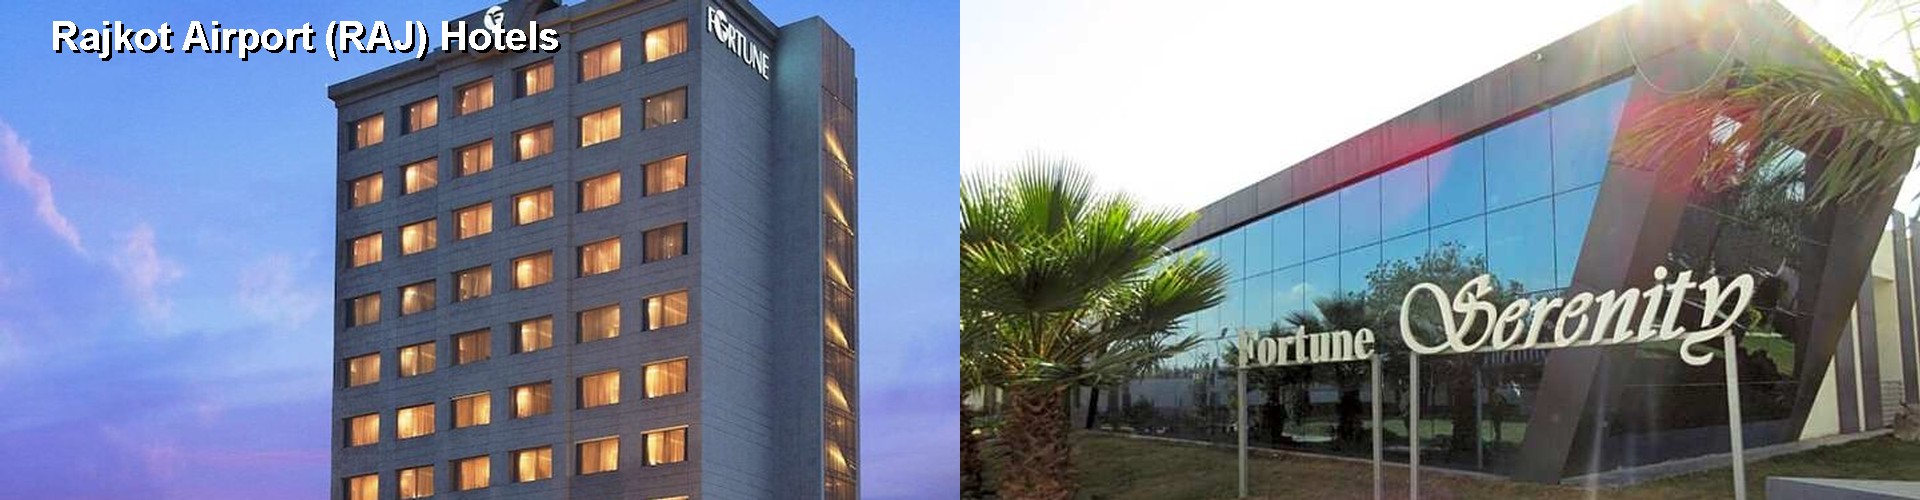 5 Best Hotels near Rajkot Airport (RAJ)